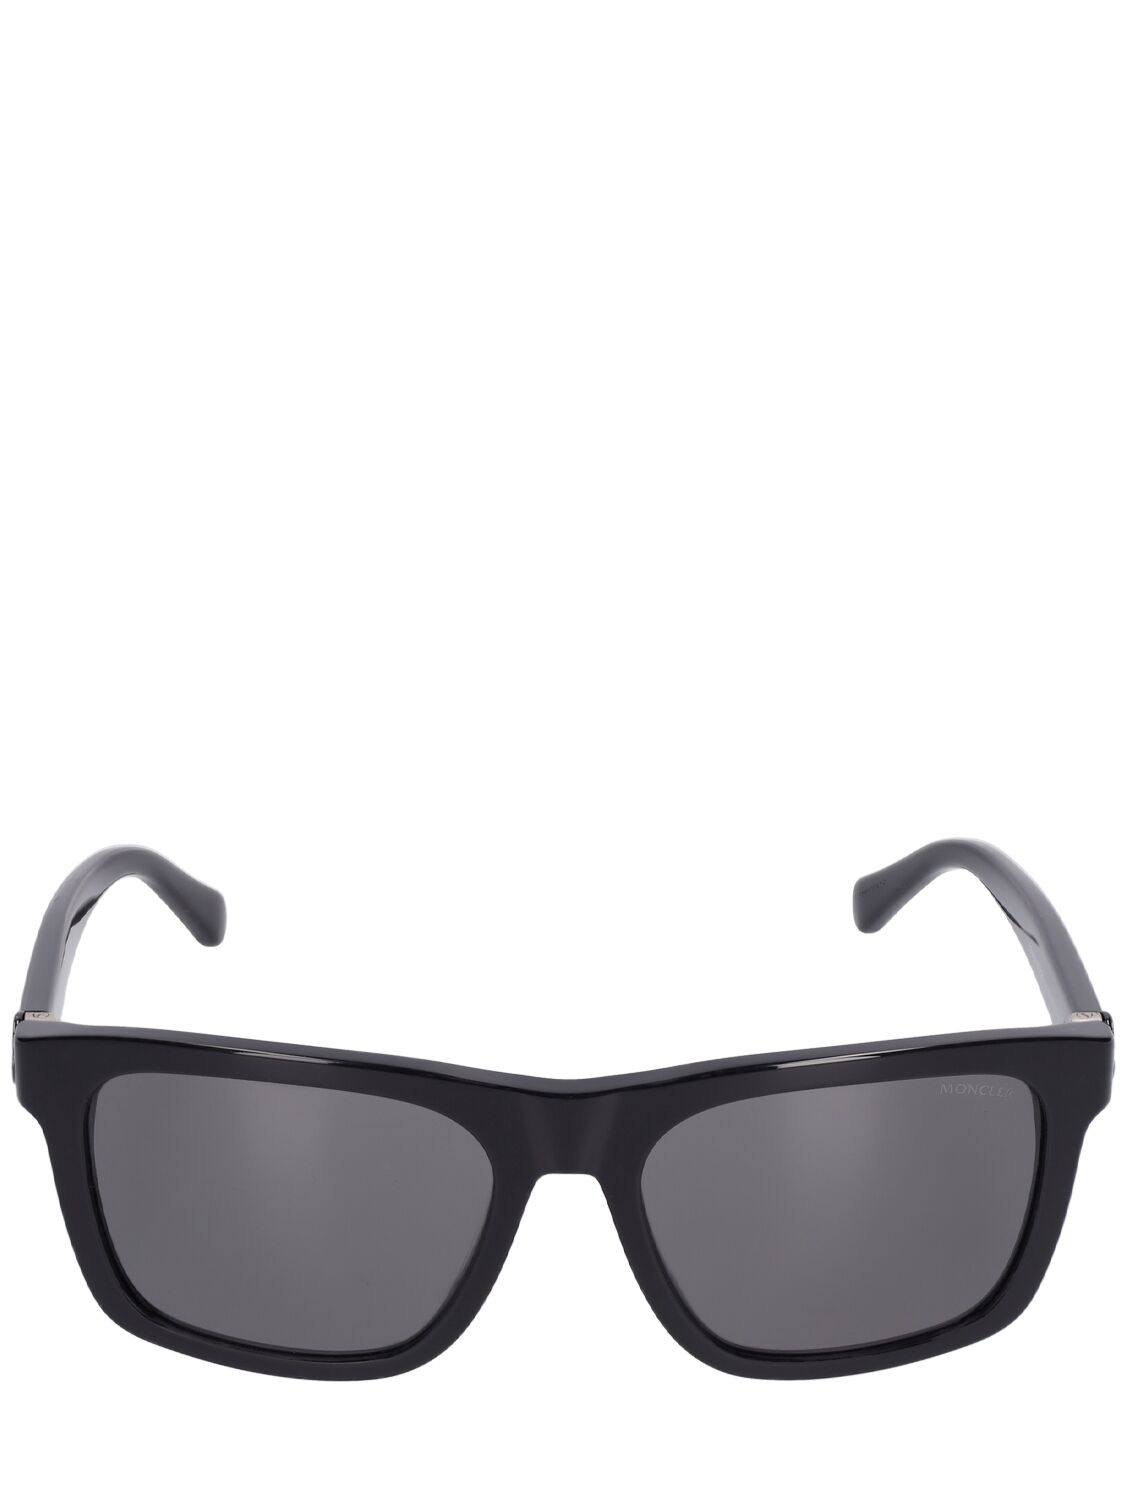 Image of Colada Squared Sunglasses